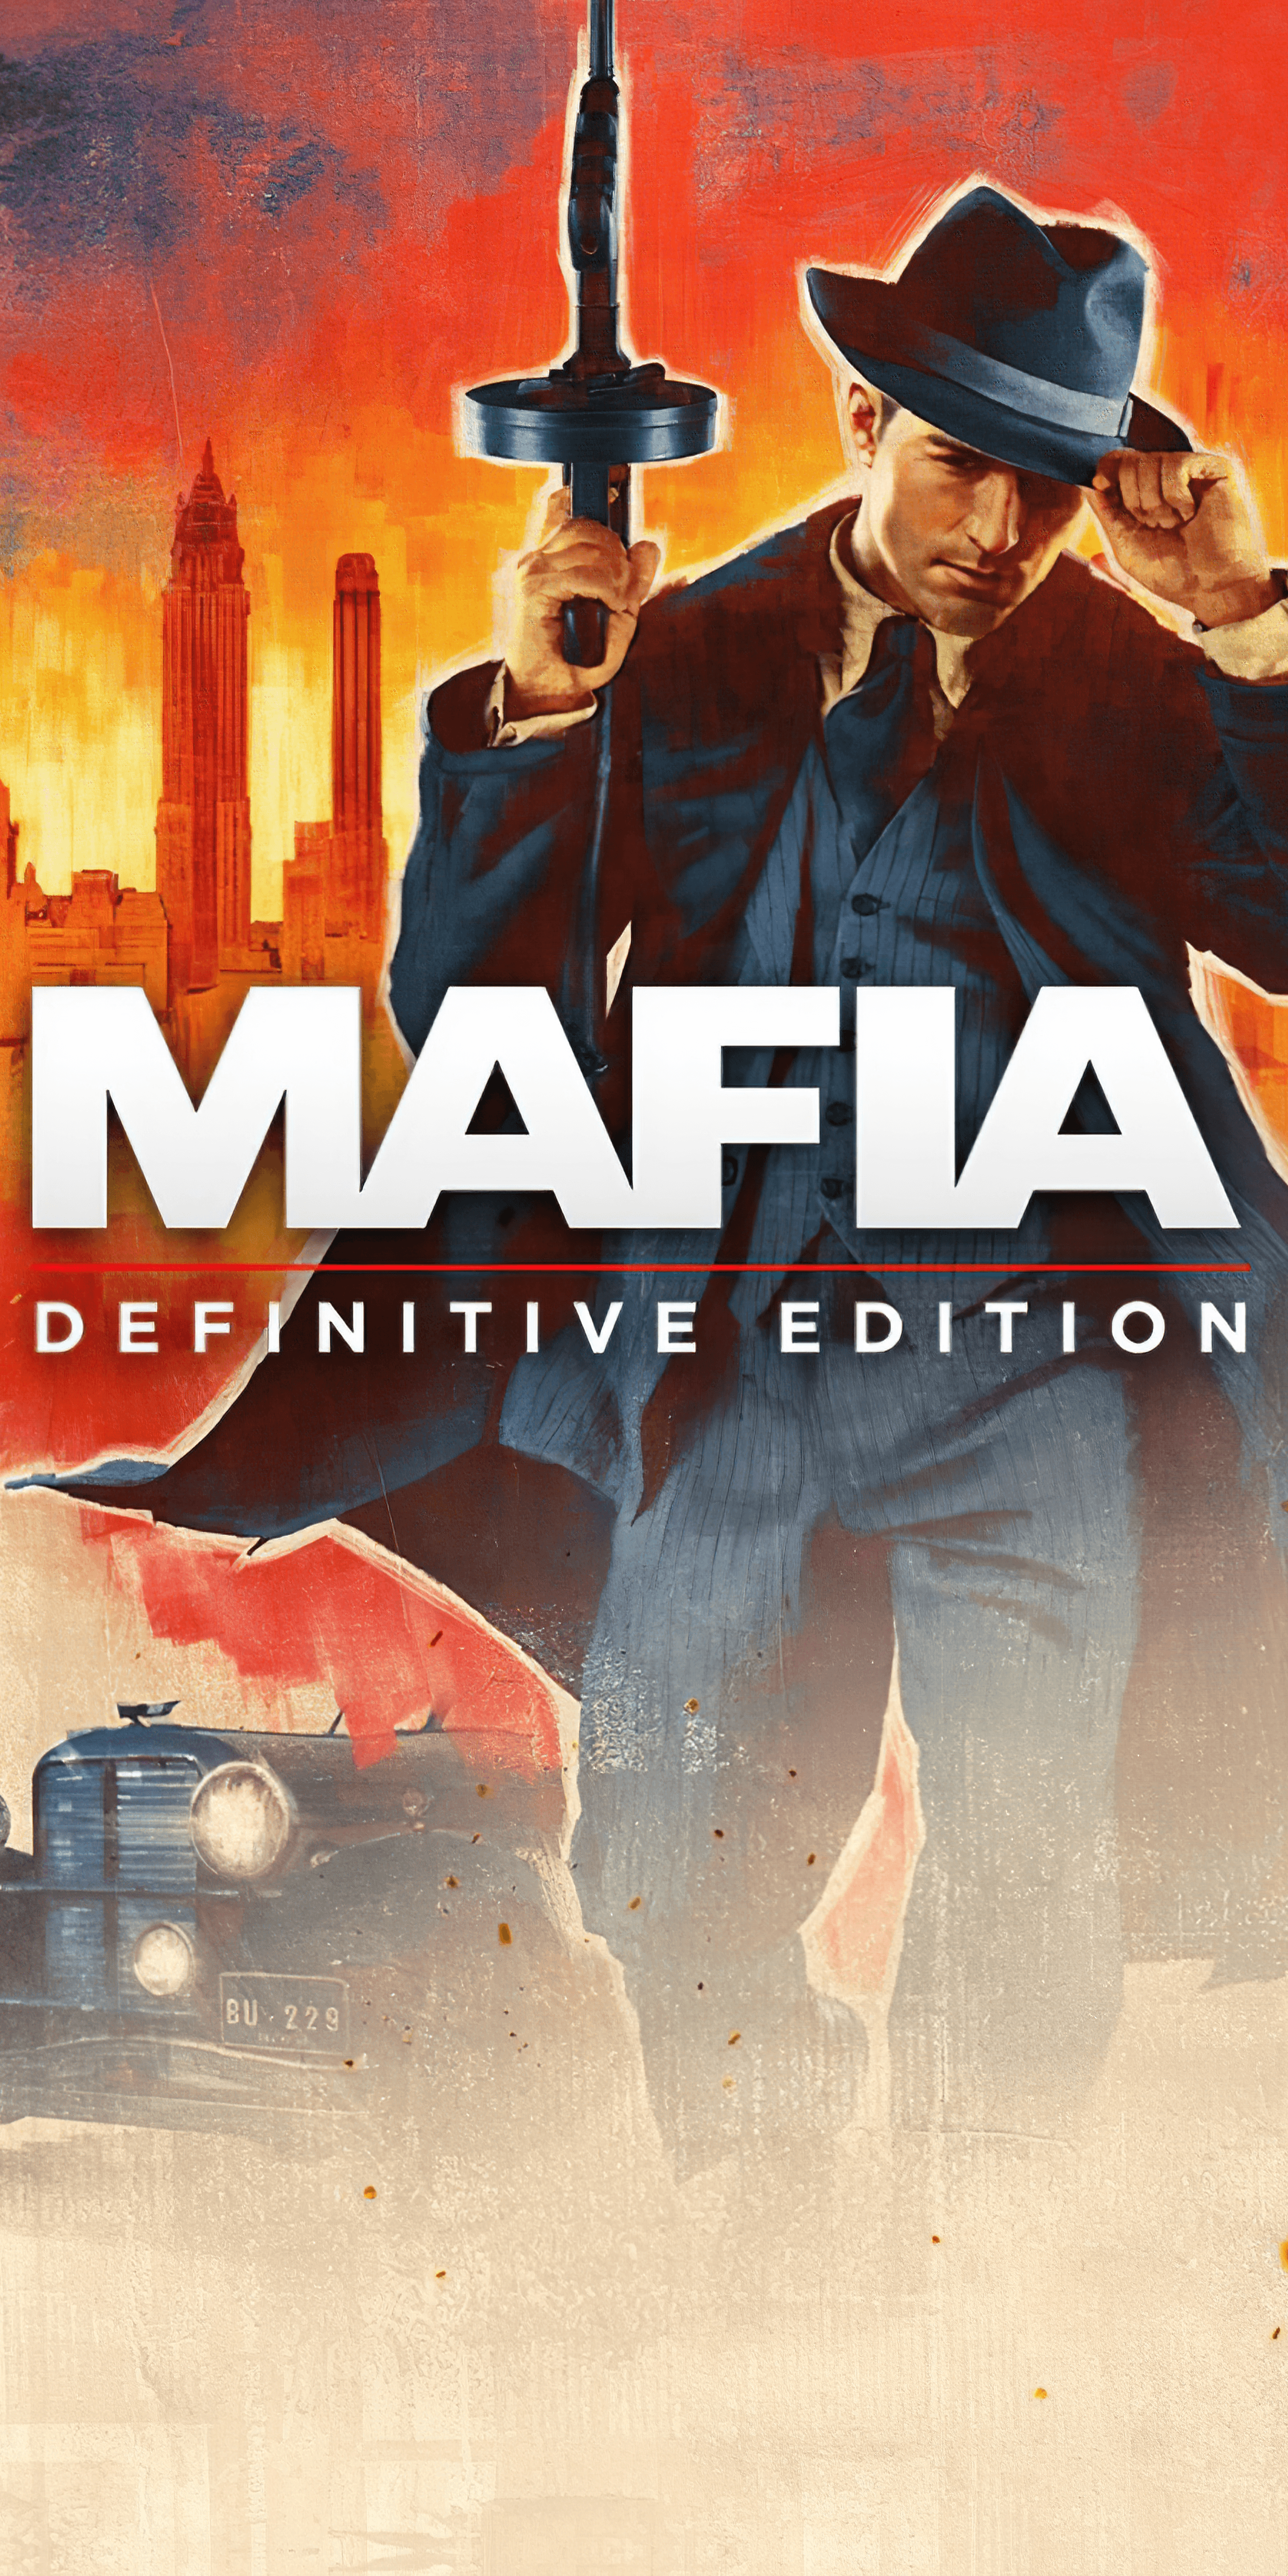 Mafia Definitive Edition Wallpaper Free Mafia Definitive Edition Background